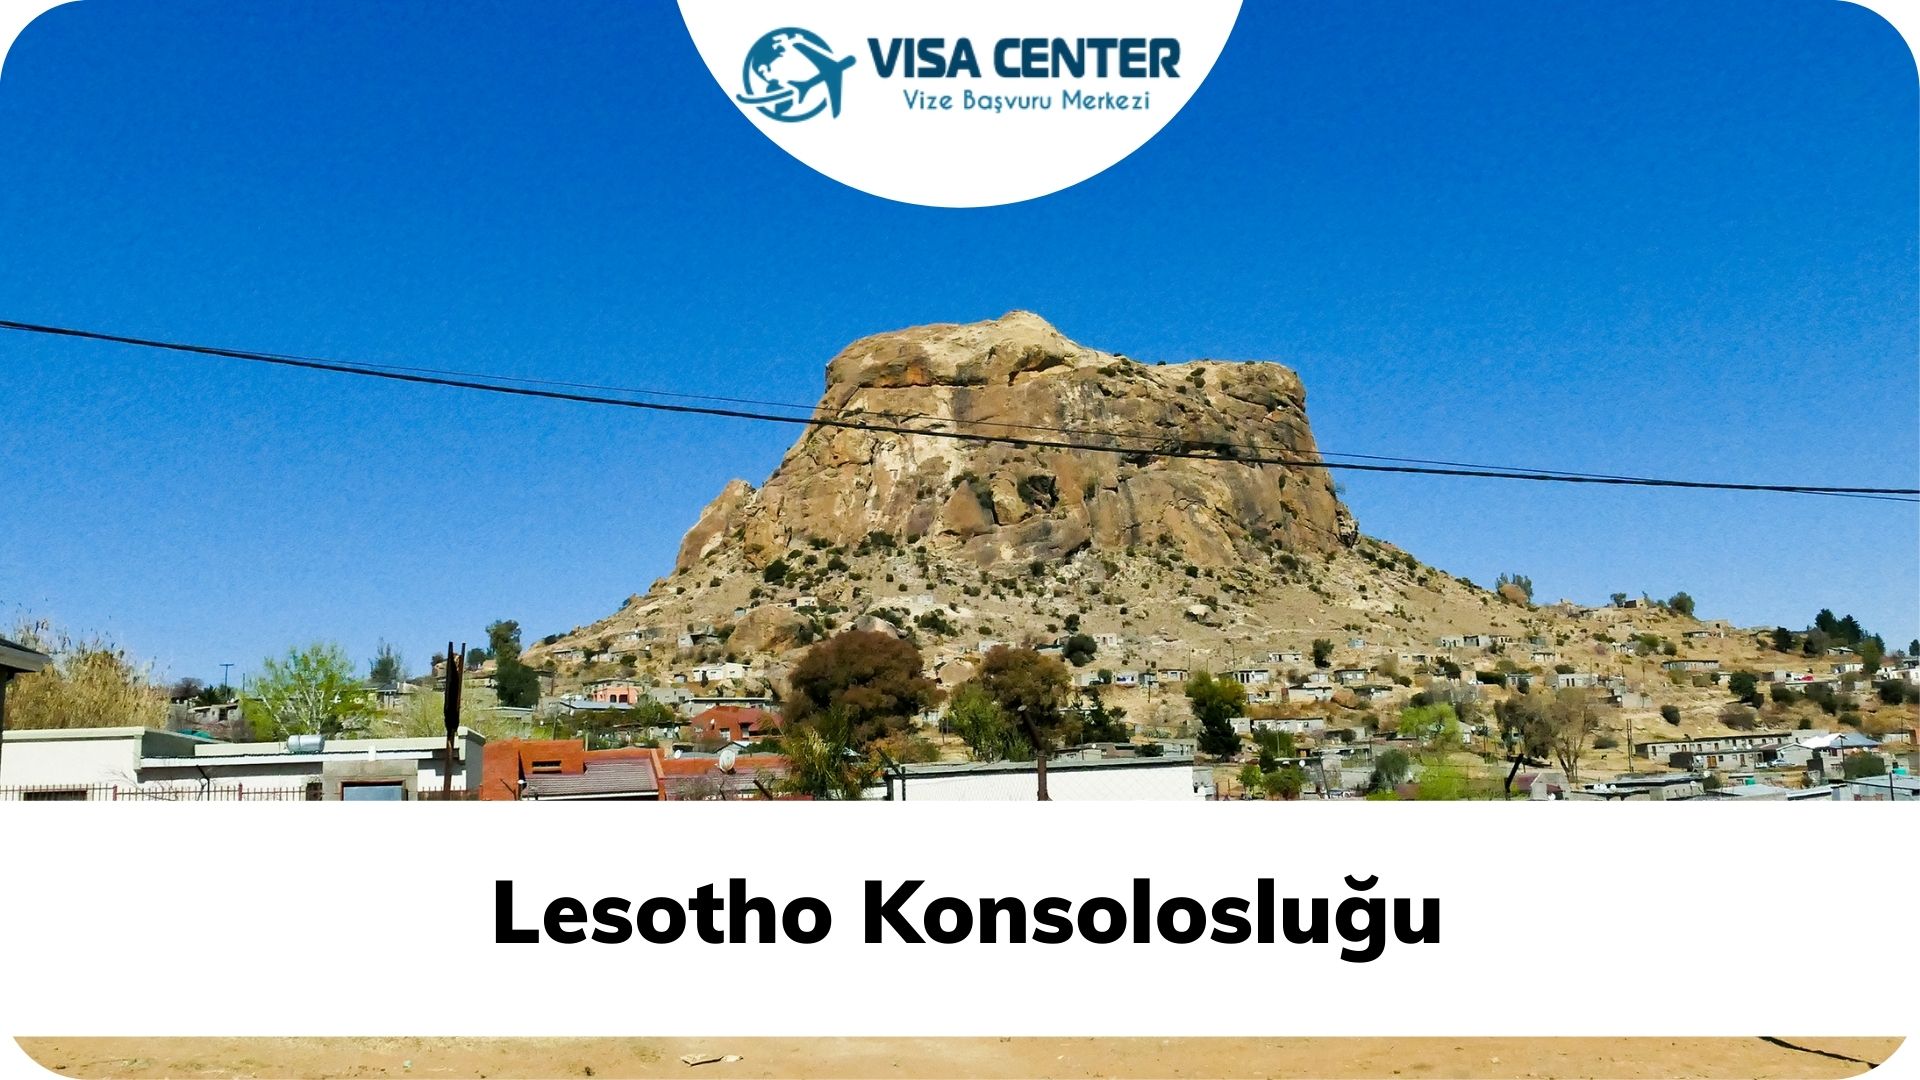 Lesotho Konsolosluğu